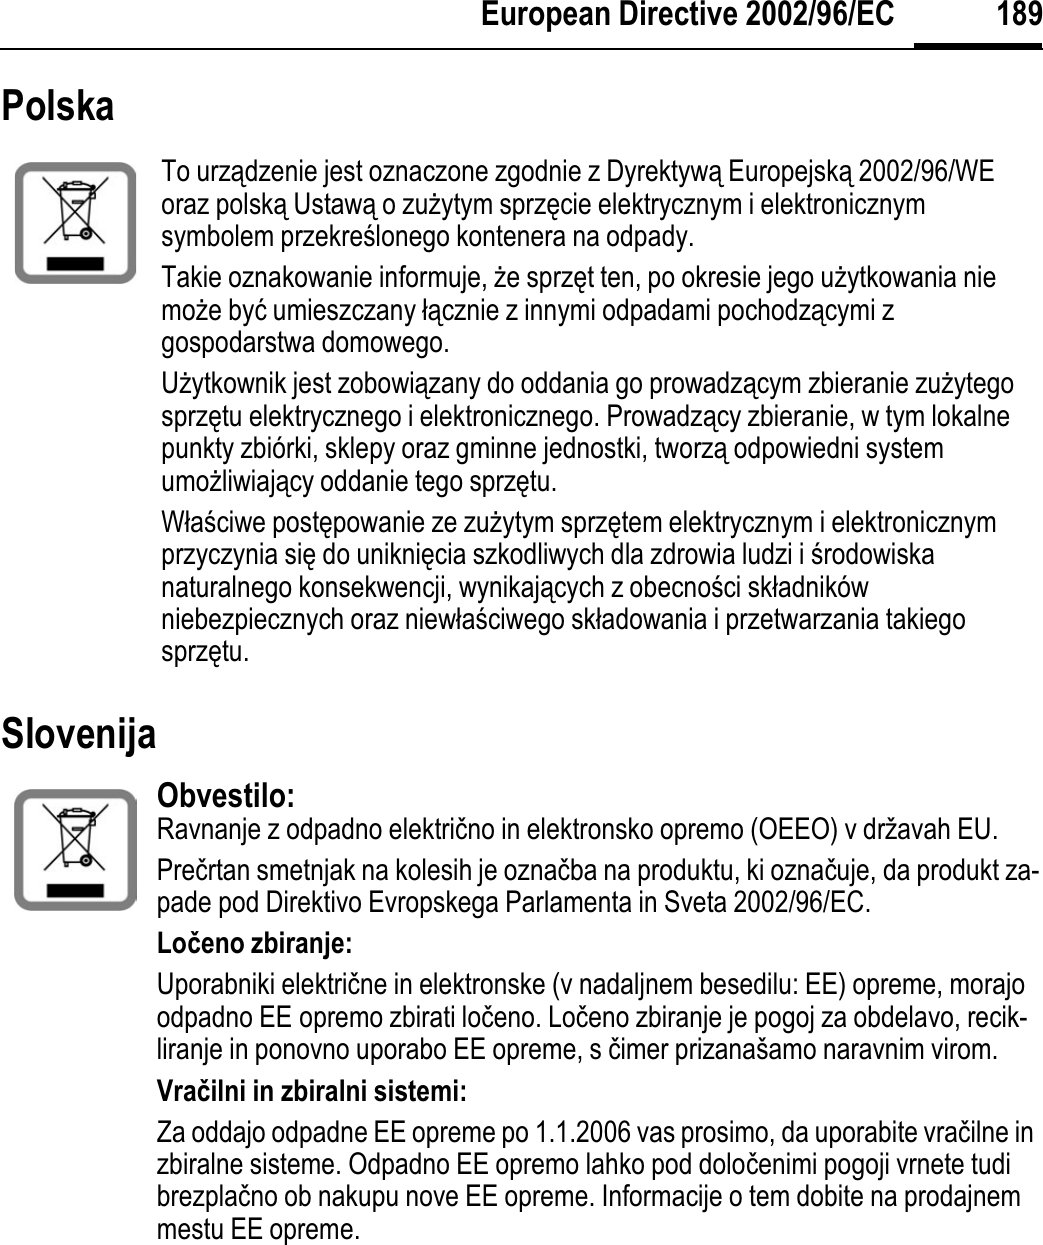 189European Directive 2002/96/ECPolska Slovenija To urządzenie jest oznaczone zgodnie z Dyrektywą Europejską 2002/96/WE oraz polską Ustawą o zuĪytym sprzĊcie elektrycznym i elektronicznym symbolem przekreĞlonego kontenera na odpady.Takie oznakowanie informuje, Īe sprzĊt ten, po okresie jego uĪytkowania nie moĪe byü umieszczany áącznie z innymi odpadami pochodzącymi z gospodarstwa domowego. UĪytkownik jest zobowiązany do oddania go prowadzącym zbieranie zuĪytego sprzĊtu elektrycznego i elektronicznego. Prowadzący zbieranie, w tym lokalne punkty zbiórki, sklepy oraz gminne jednostki, tworzą odpowiedni system umoĪliwiający oddanie tego sprzĊtu.WáaĞciwe postĊpowanie ze zuĪytym sprzĊtem elektrycznym i elektronicznym przyczynia siĊ do unikniĊcia szkodliwych dla zdrowia ludzi i Ğrodowiskanaturalnego konsekwencji, wynikających z obecnoĞci skáadników niebezpiecznych oraz niewáaĞciwego skáadowania i przetwarzania takiego sprzĊtu. Obvestilo: Ravnanje z odpadno elektriþno in elektronsko opremo (OEEO) v državah EU.Preþrtan smetnjak na kolesih je oznaþba na produktu, ki oznaþuje, da produkt za-pade pod Direktivo Evropskega Parlamenta in Sveta 2002/96/EC.Loÿeno zbiranje:Uporabniki elektriþne in elektronske (v nadaljnem besedilu: EE) opreme, morajo odpadno EE opremo zbirati loþeno. Loþeno zbiranje je pogoj za obdelavo, recik-liranje in ponovno uporabo EE opreme, s þimer prizanašamo naravnim virom.Vraÿilni in zbiralni sistemi:Za oddajo odpadne EE opreme po 1.1.2006 vas prosimo, da uporabite vraþilne in zbiralne sisteme. Odpadno EE opremo lahko pod doloþenimi pogoji vrnete tudi brezplaþno ob nakupu nove EE opreme. Informacije o tem dobite na prodajnem mestu EE opreme. 